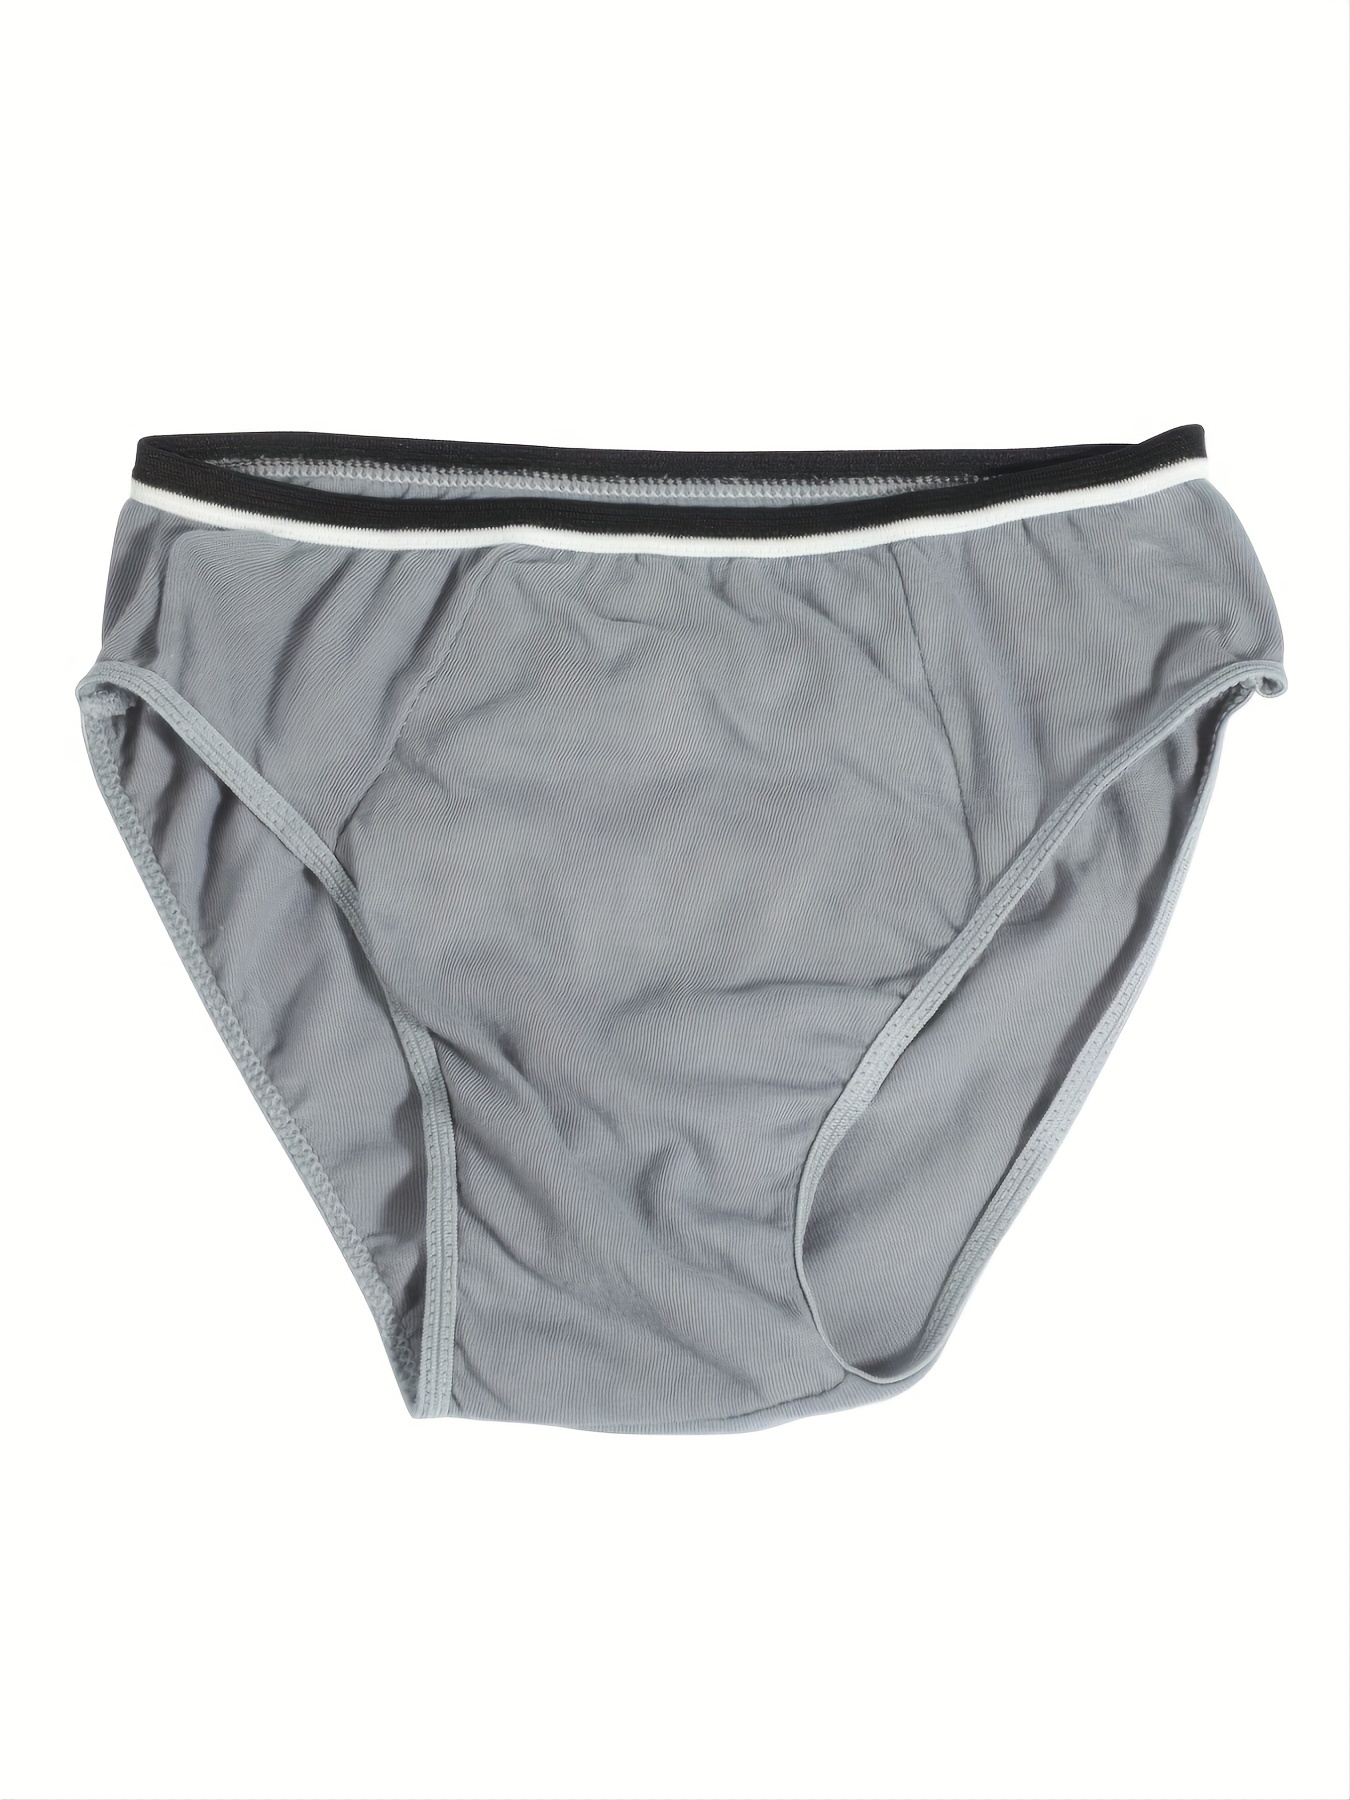 5pcs Men's Cotton Disposable Comfortable Briefs, Sterile Wash-Free  Underwear For Travel Business Trip